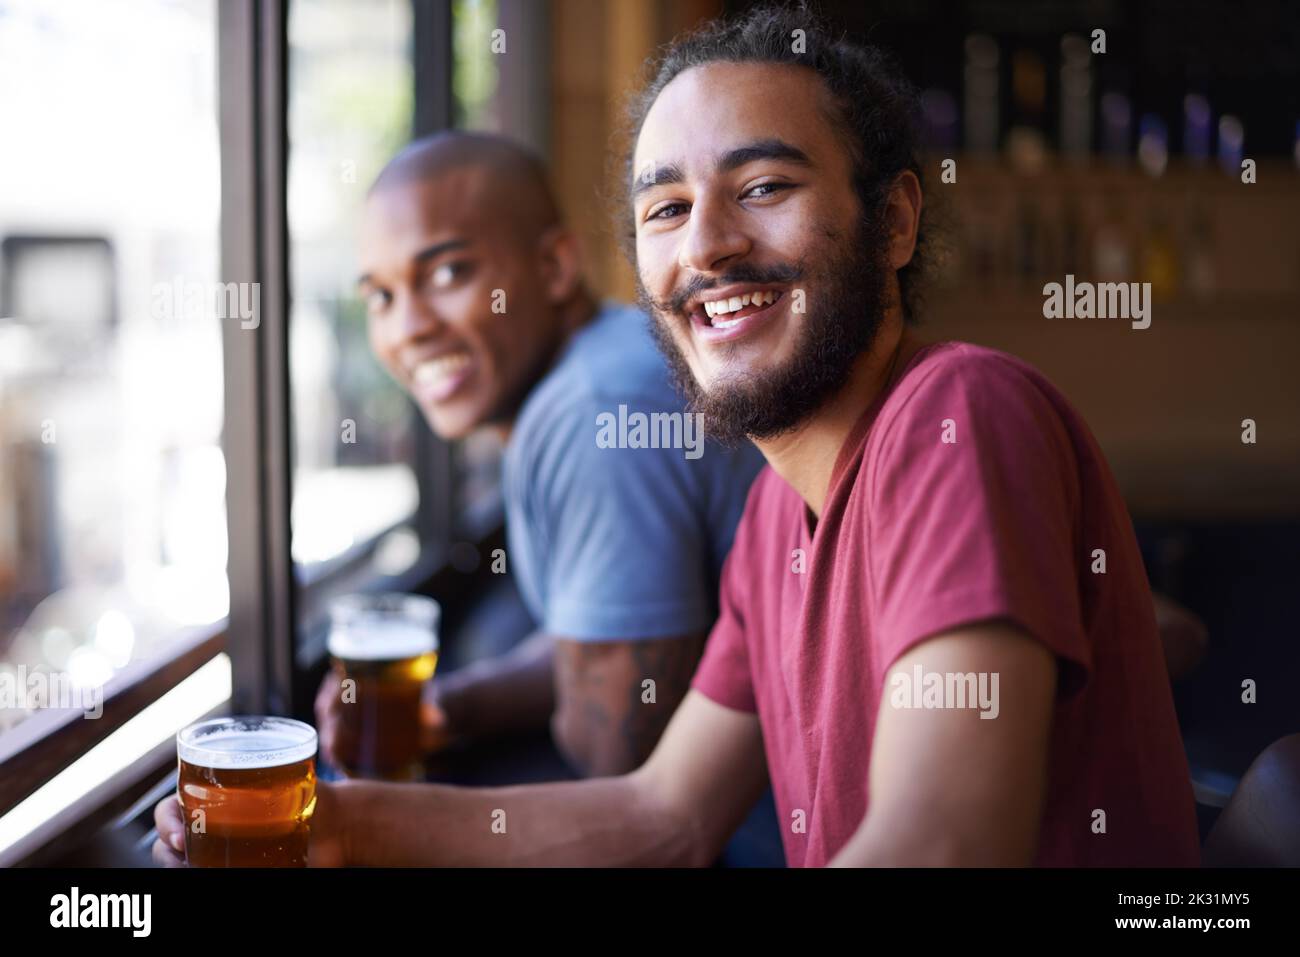 Ein gutes Lachen über ein gutes Bier. Ein kurzer Schuss von Freunden, die in einer Bar sitzen und Bier trinken. Stockfoto